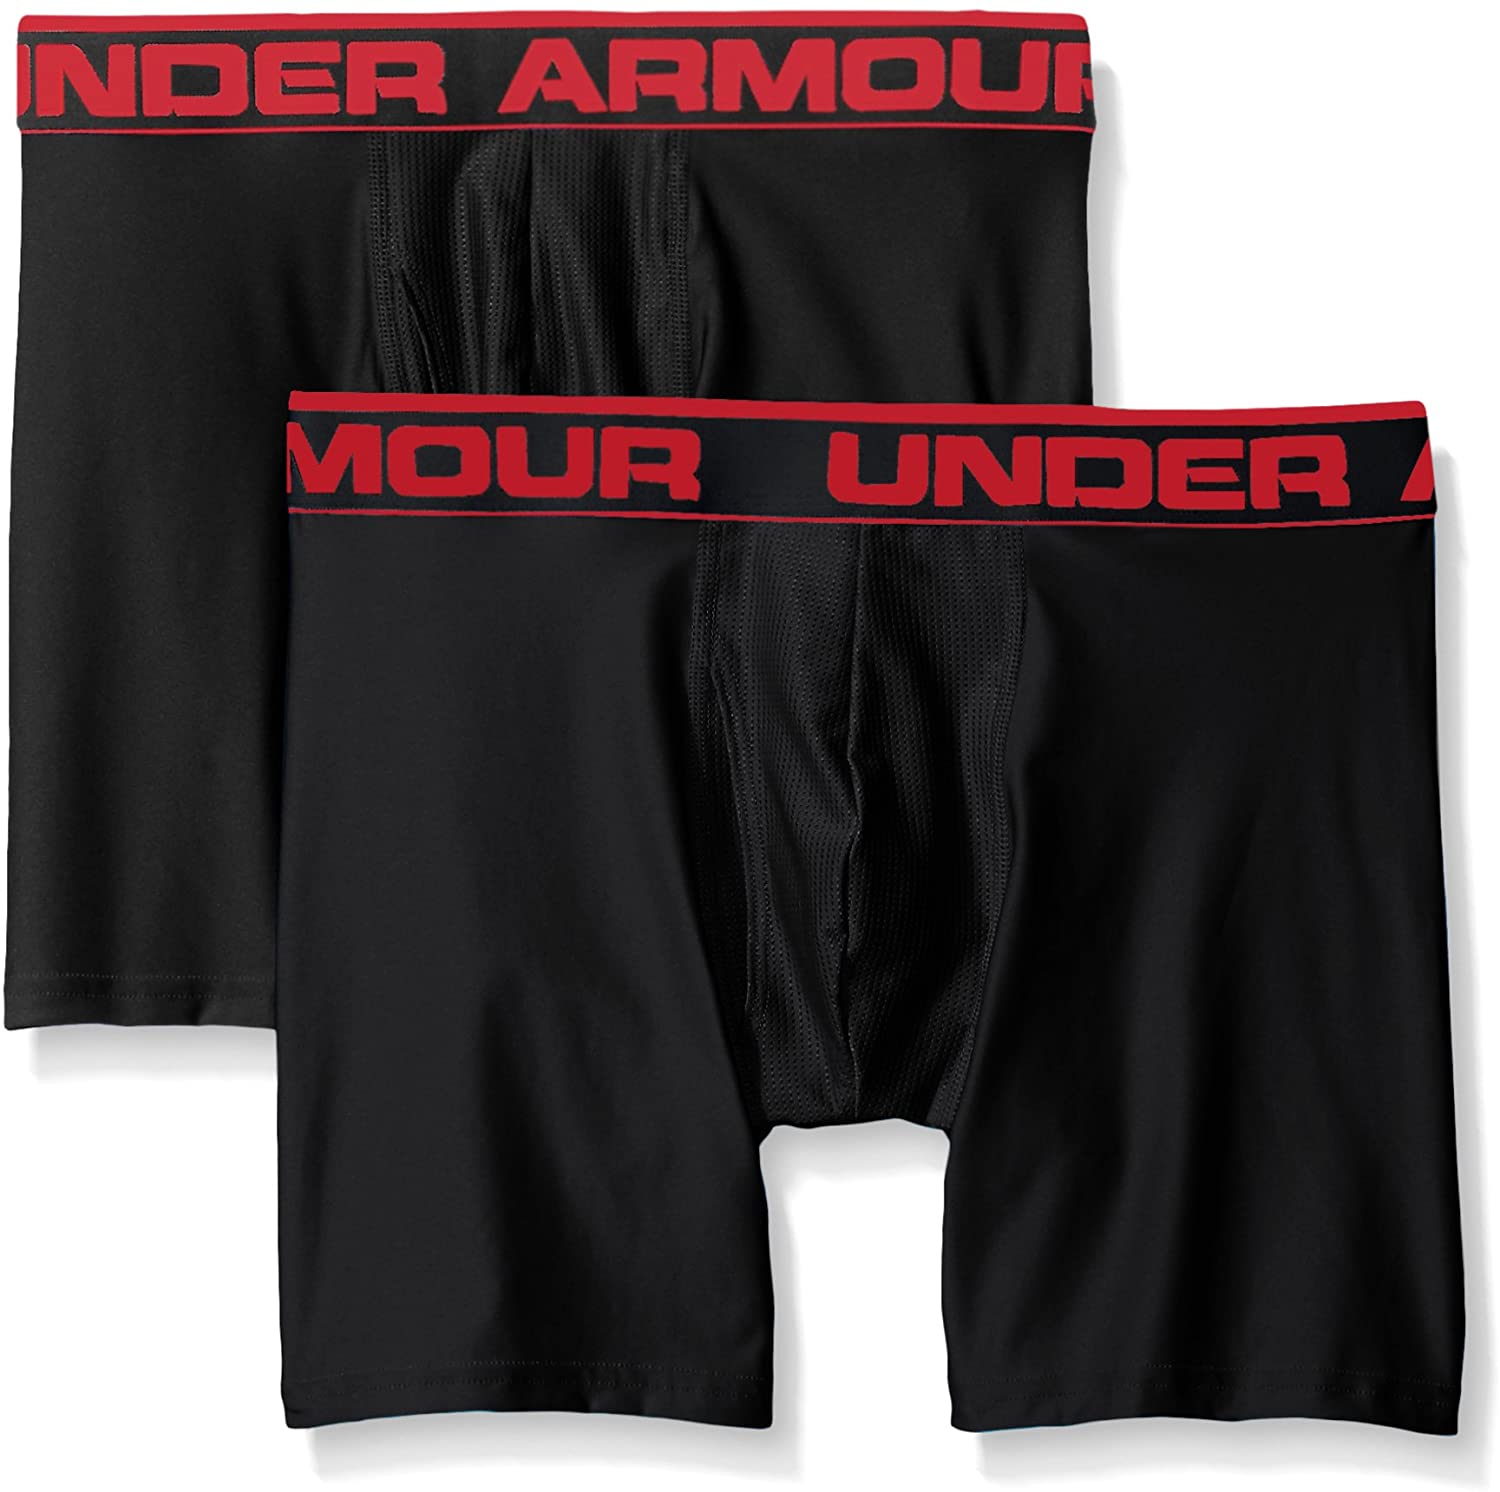 Under Armour Original Boxerjock Underwear 2 Pack 6” Boxer Brief